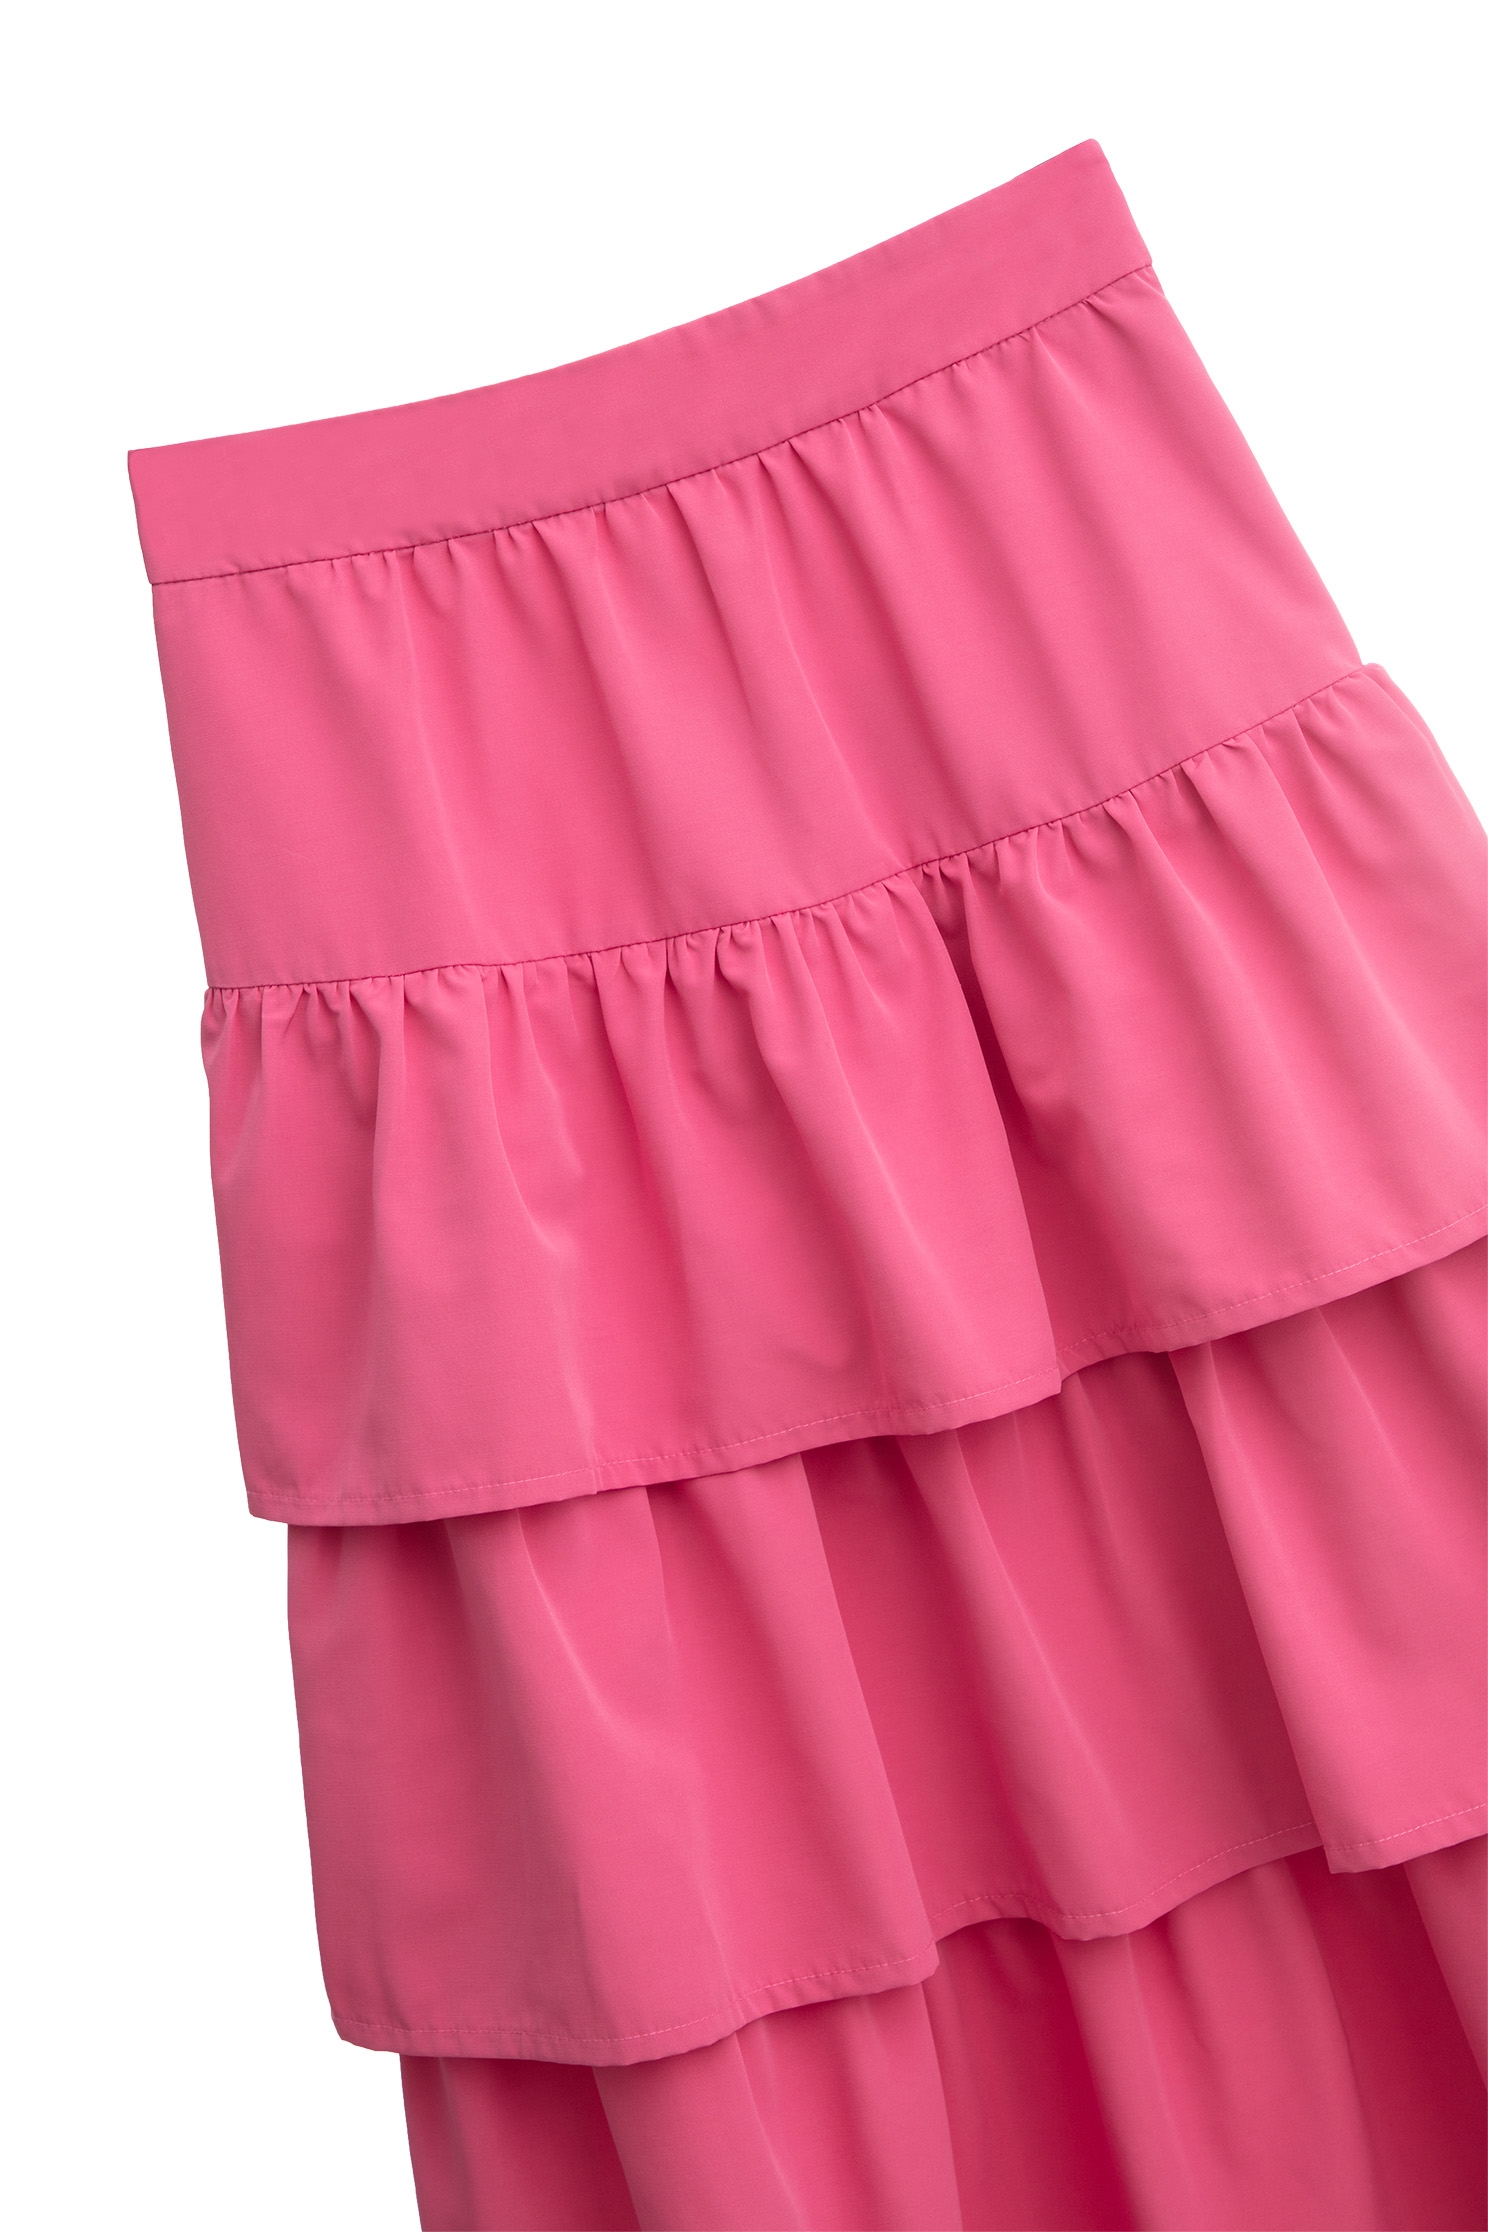 閃粉色鬆糕長裙閃粉色鬆糕長裙,春夏穿搭,時髦選品專區,網裙,長裙